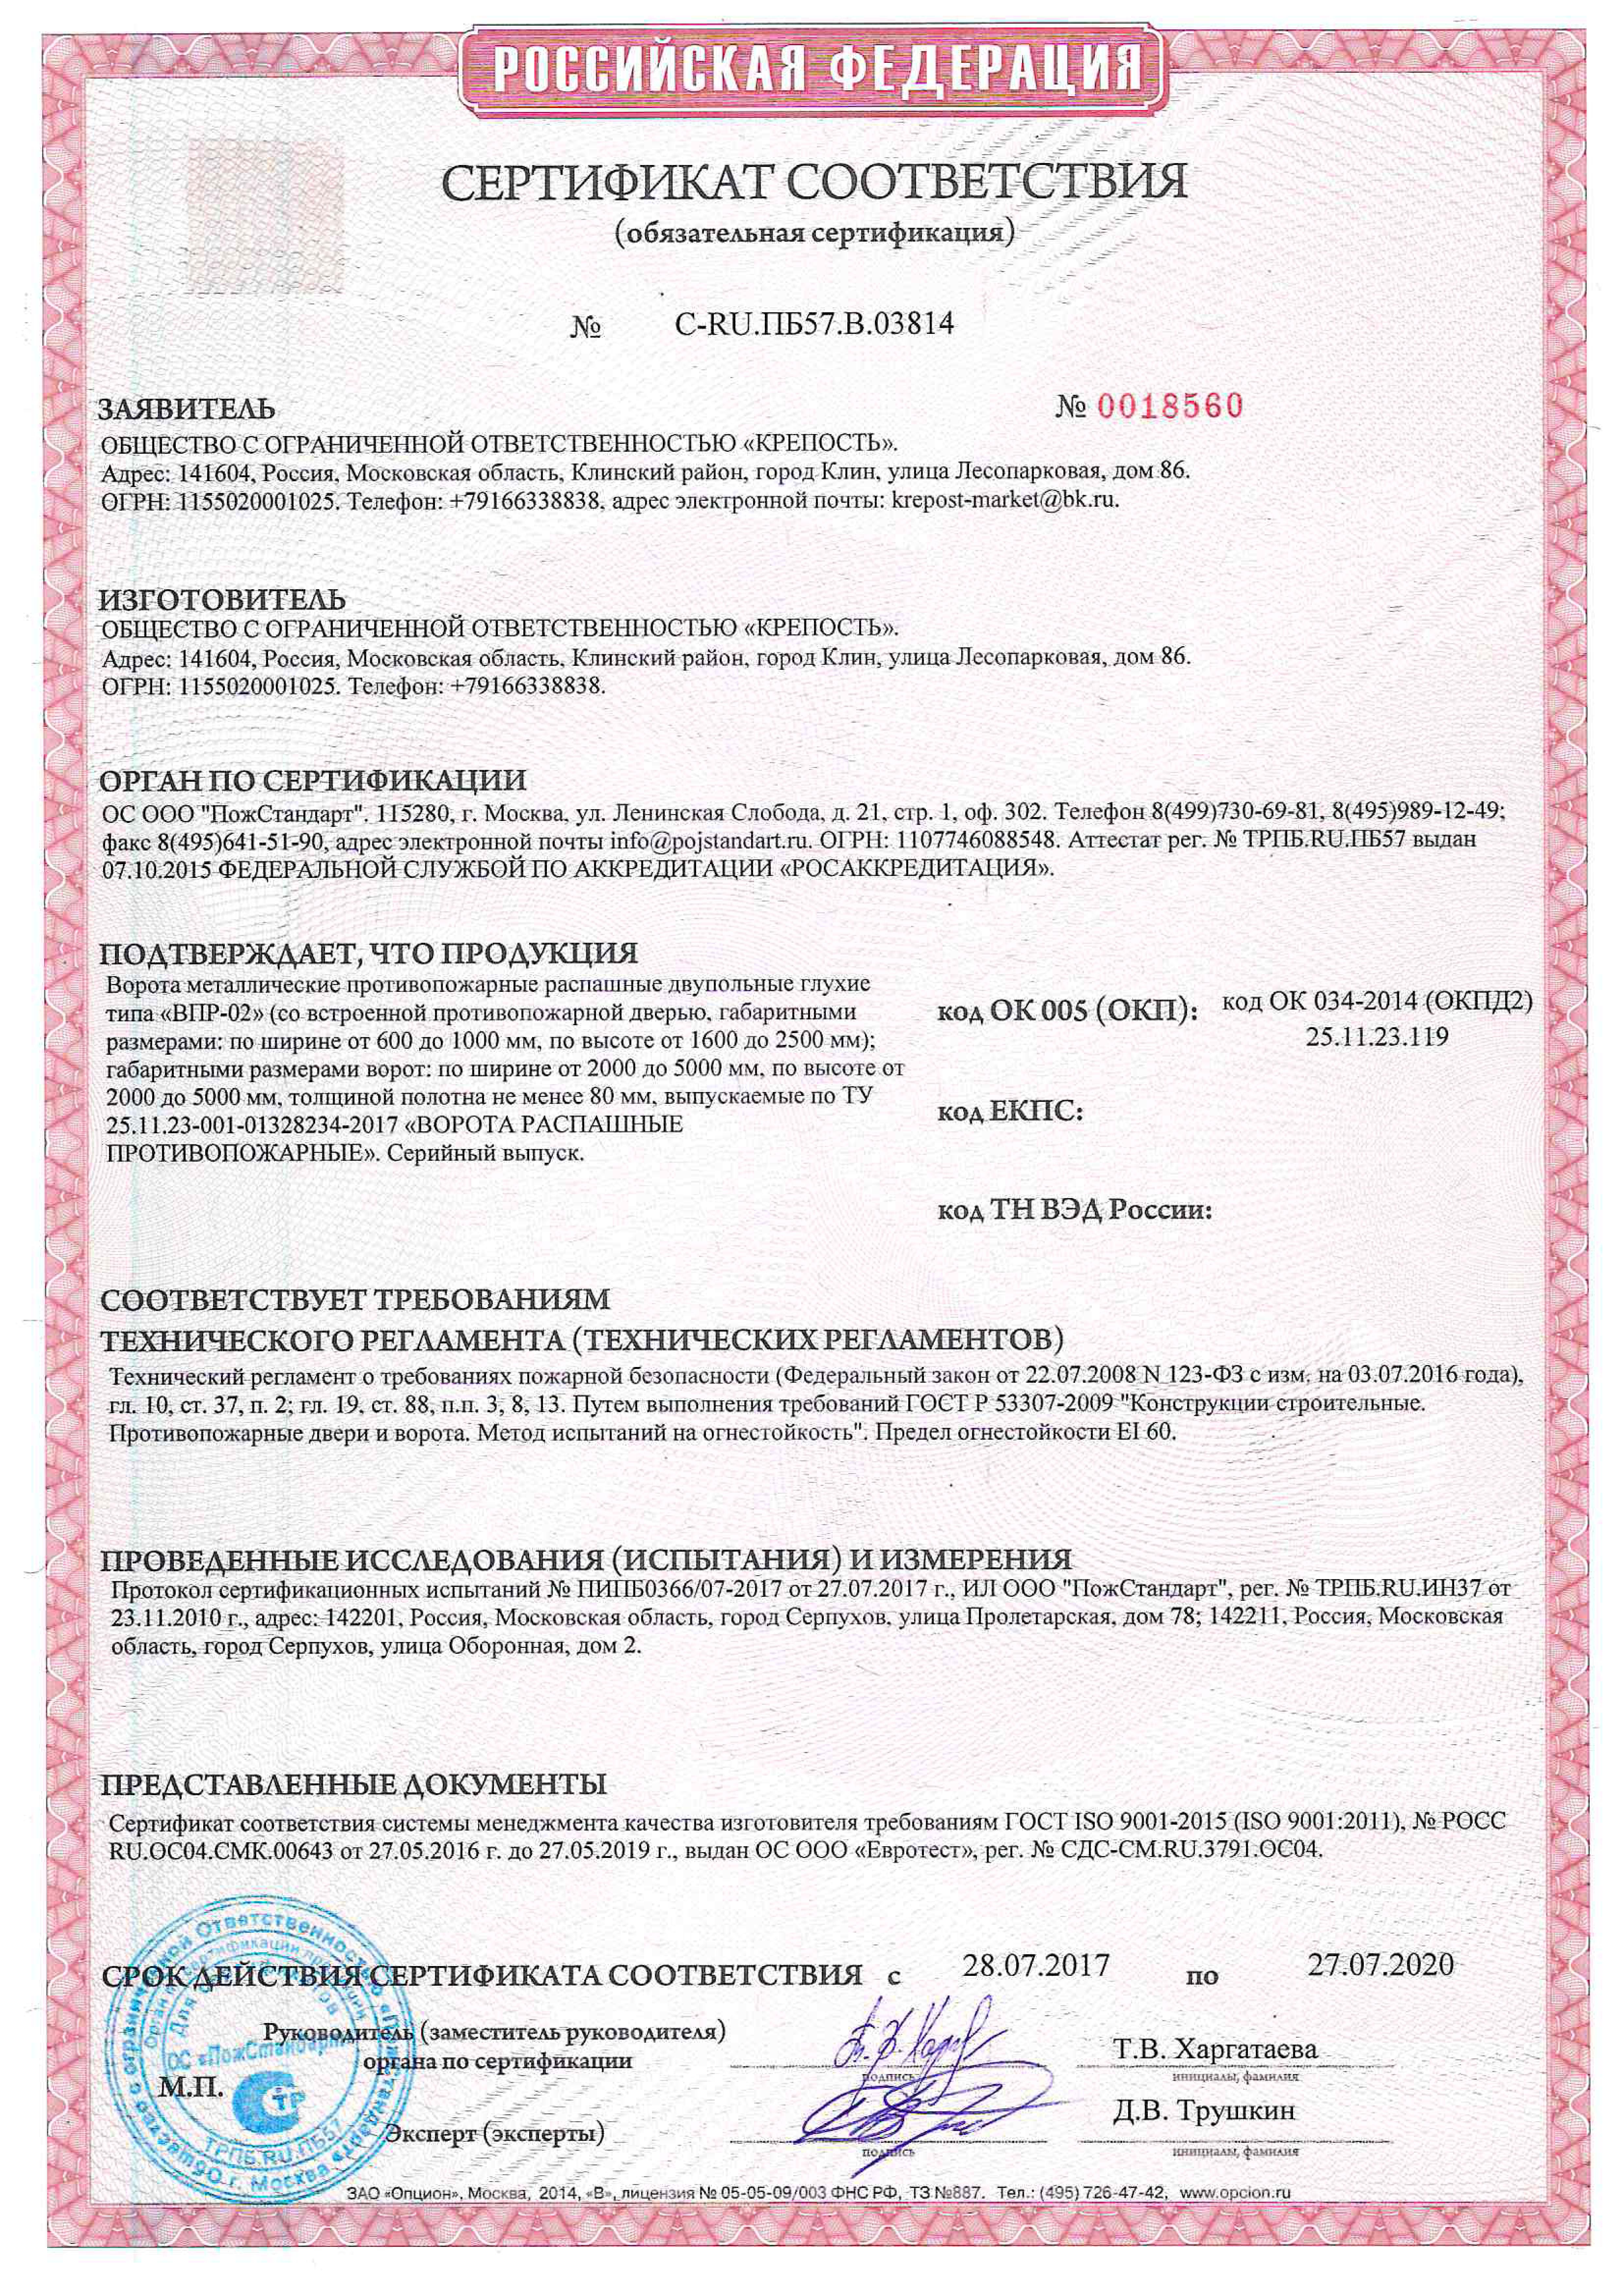 МБОР-5ф сертификат пожарной безопасности